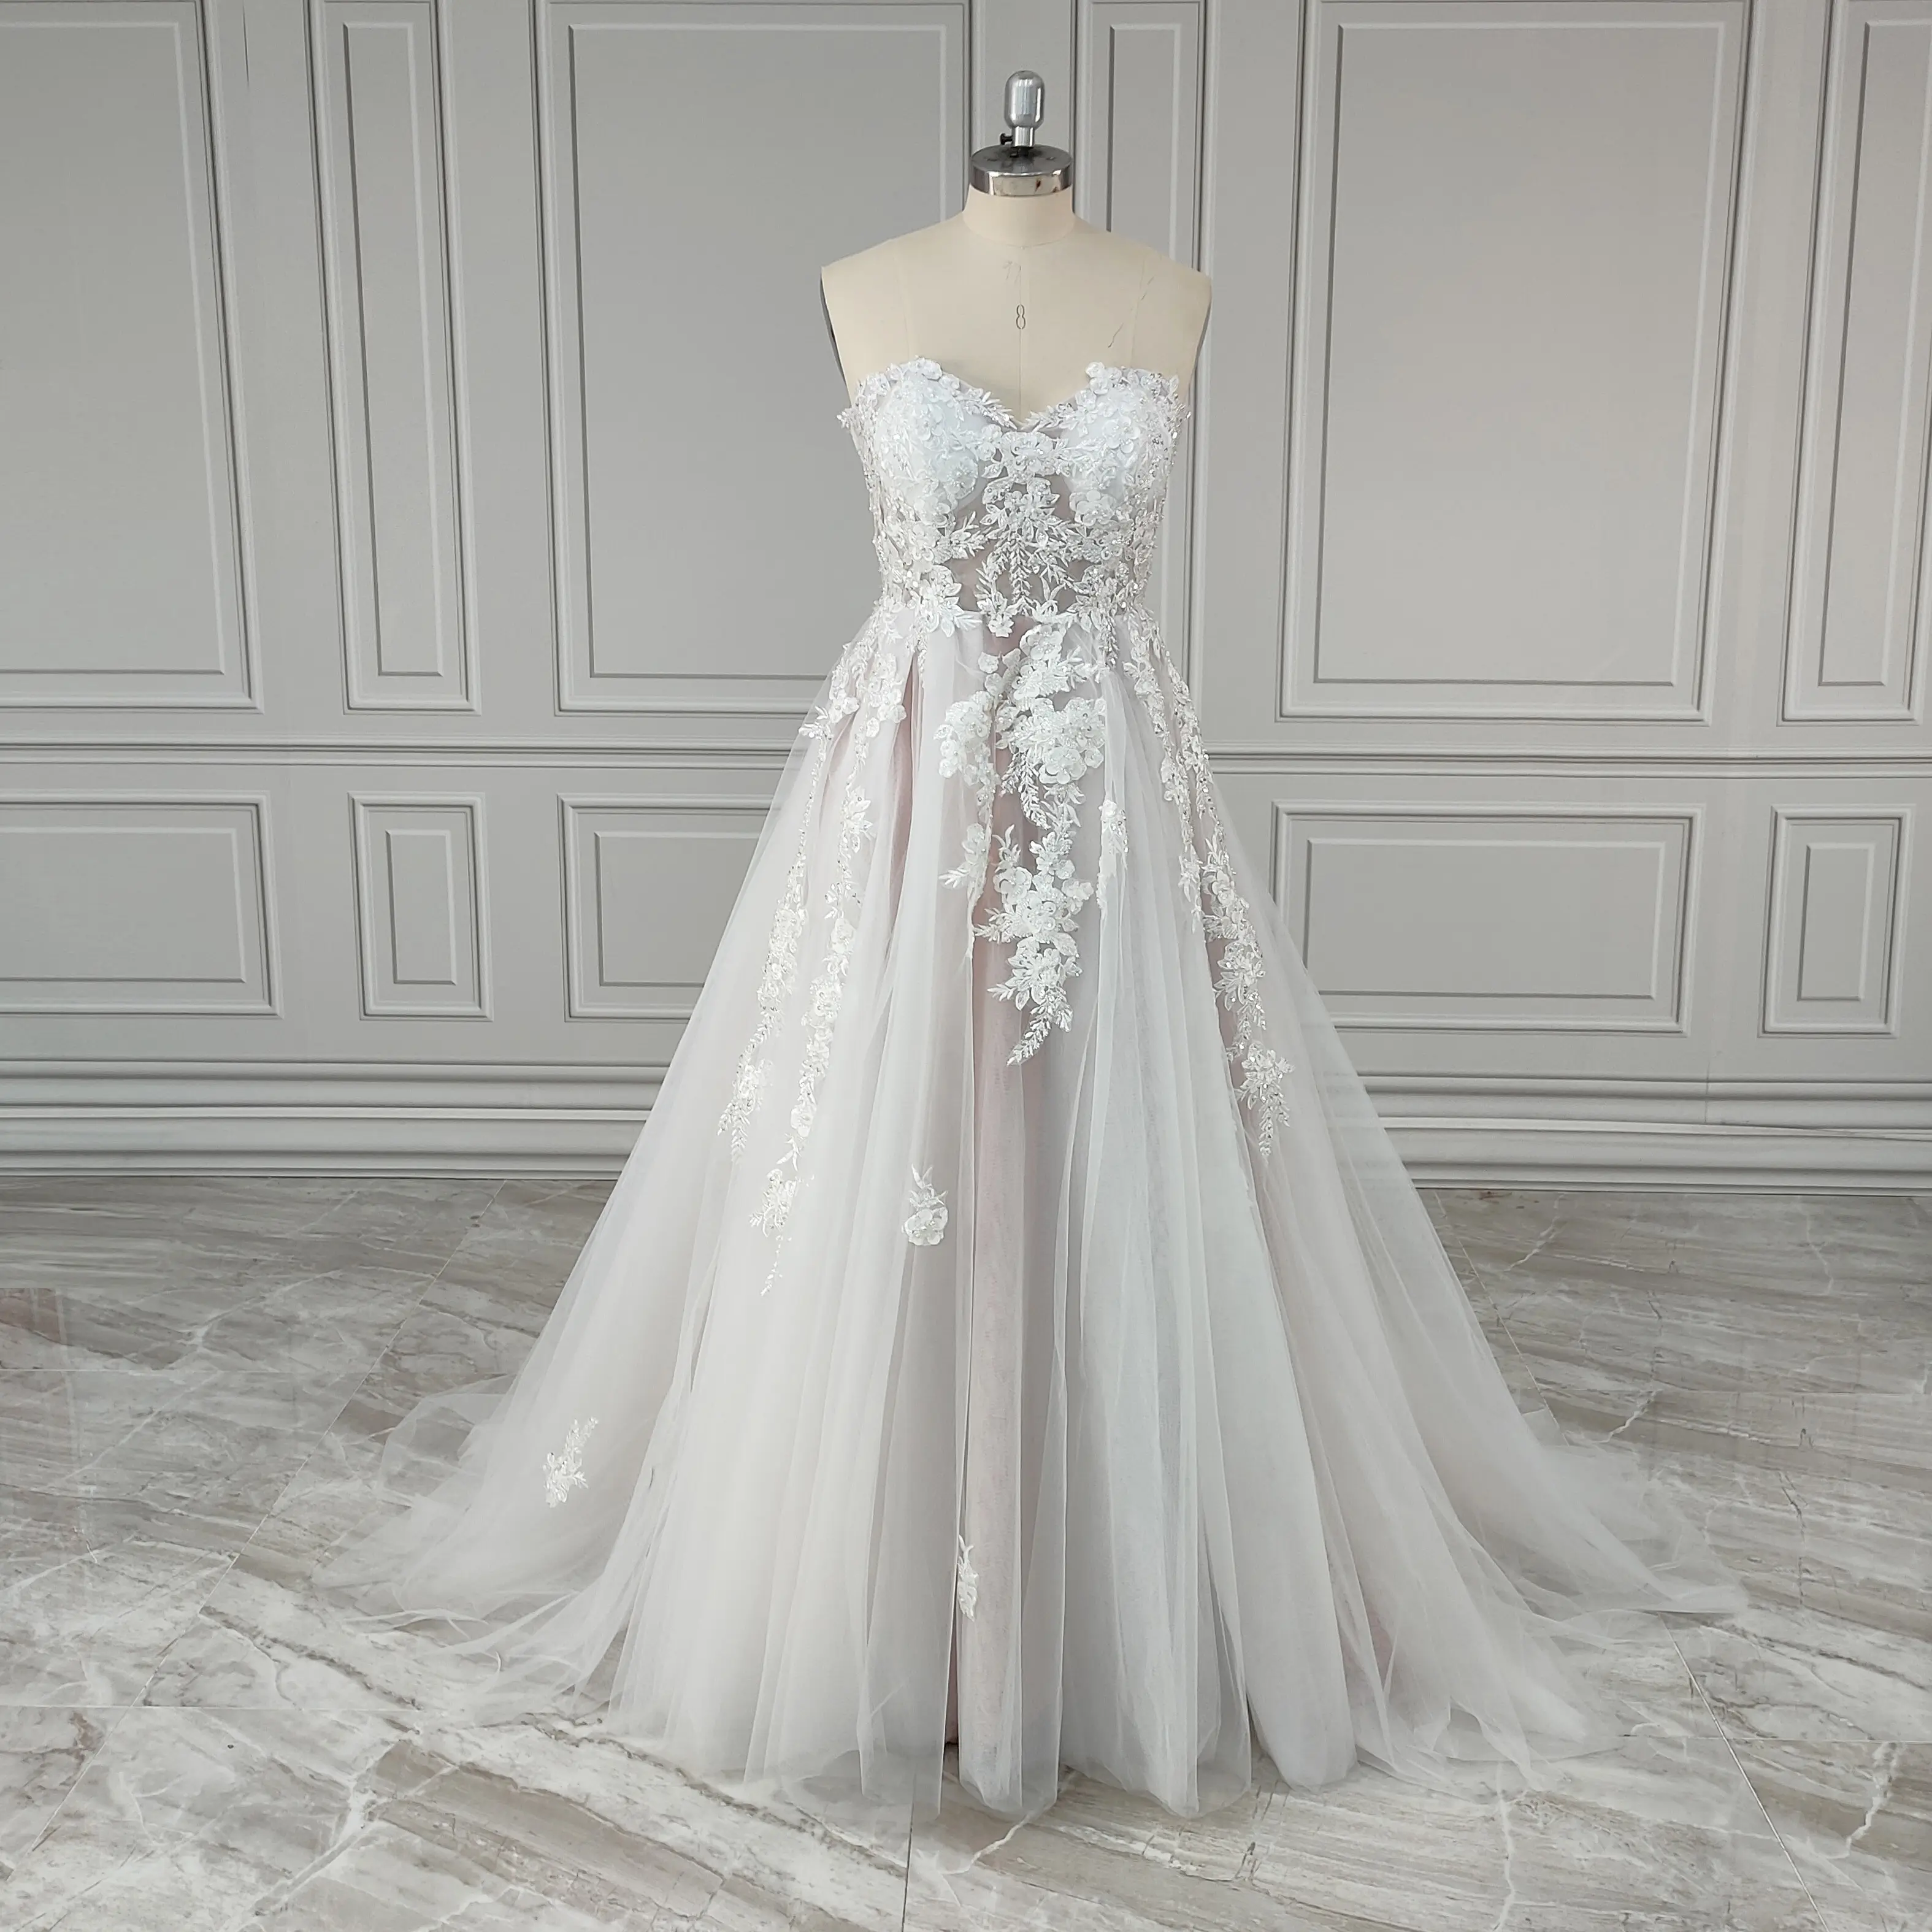 100% foto asli gaun pengantin elegan manik-manik tanpa tali berpayet renda A-line gaun pengantin belahan samping gaun pengantin Tulle